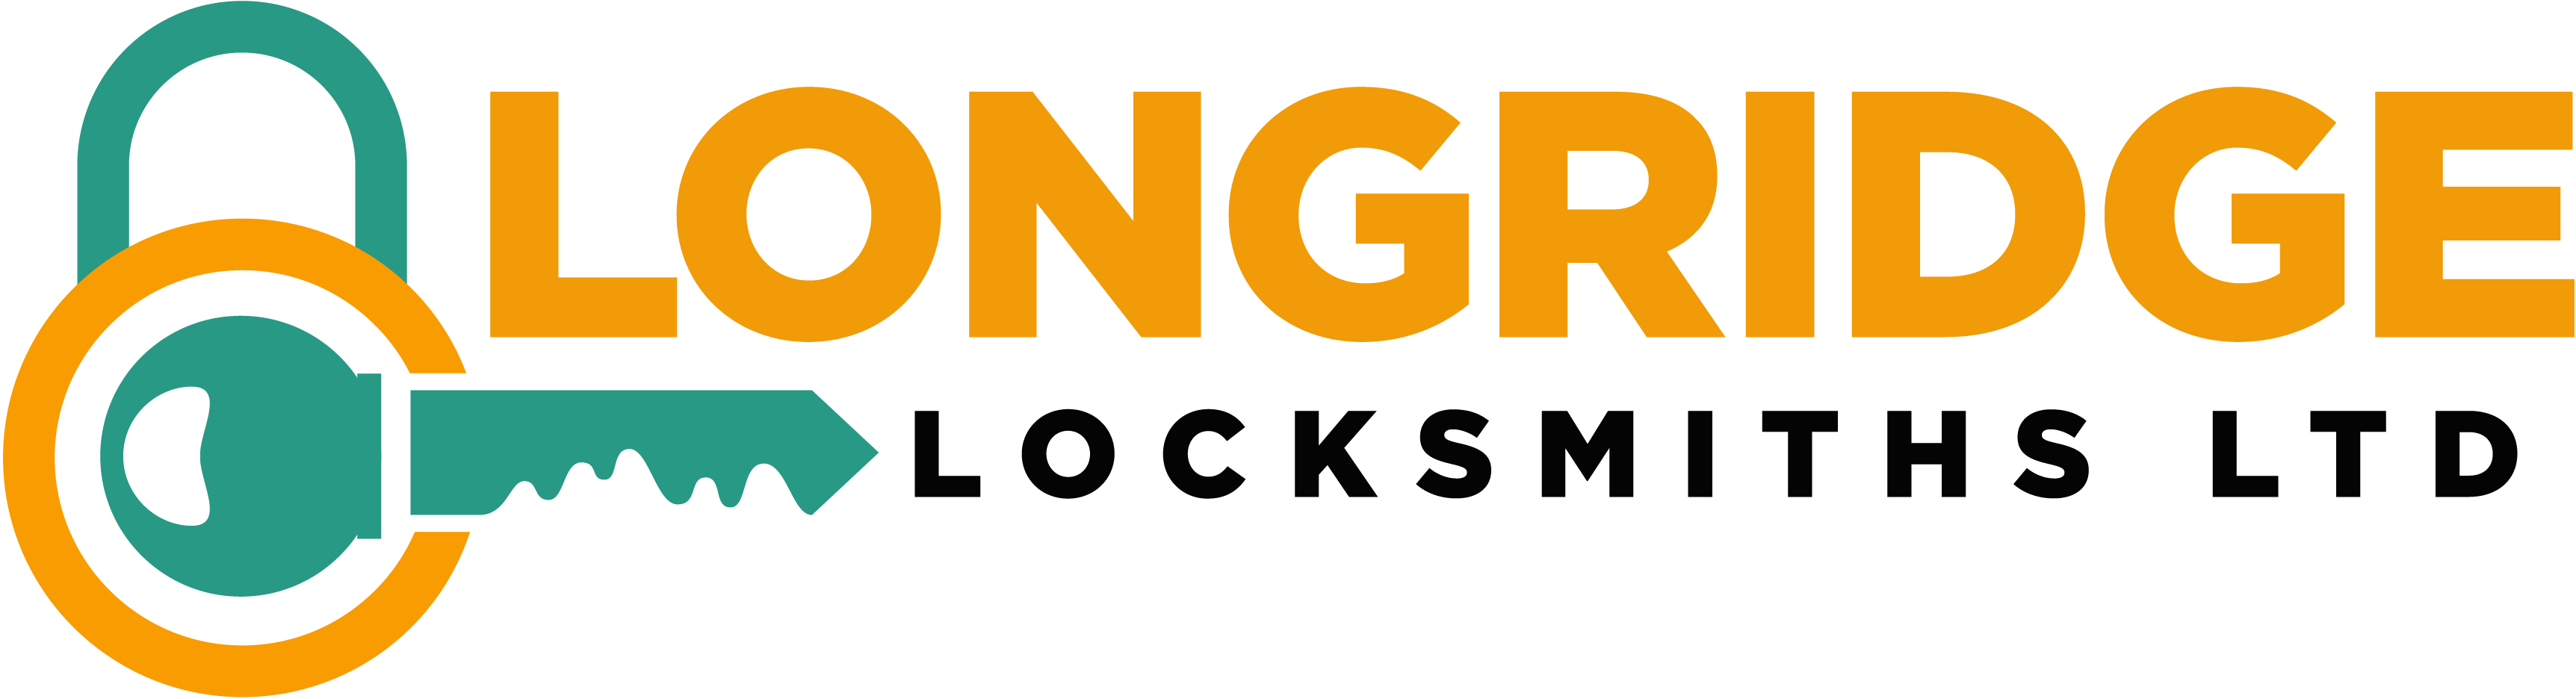 Longridge Locksmiths Ltd